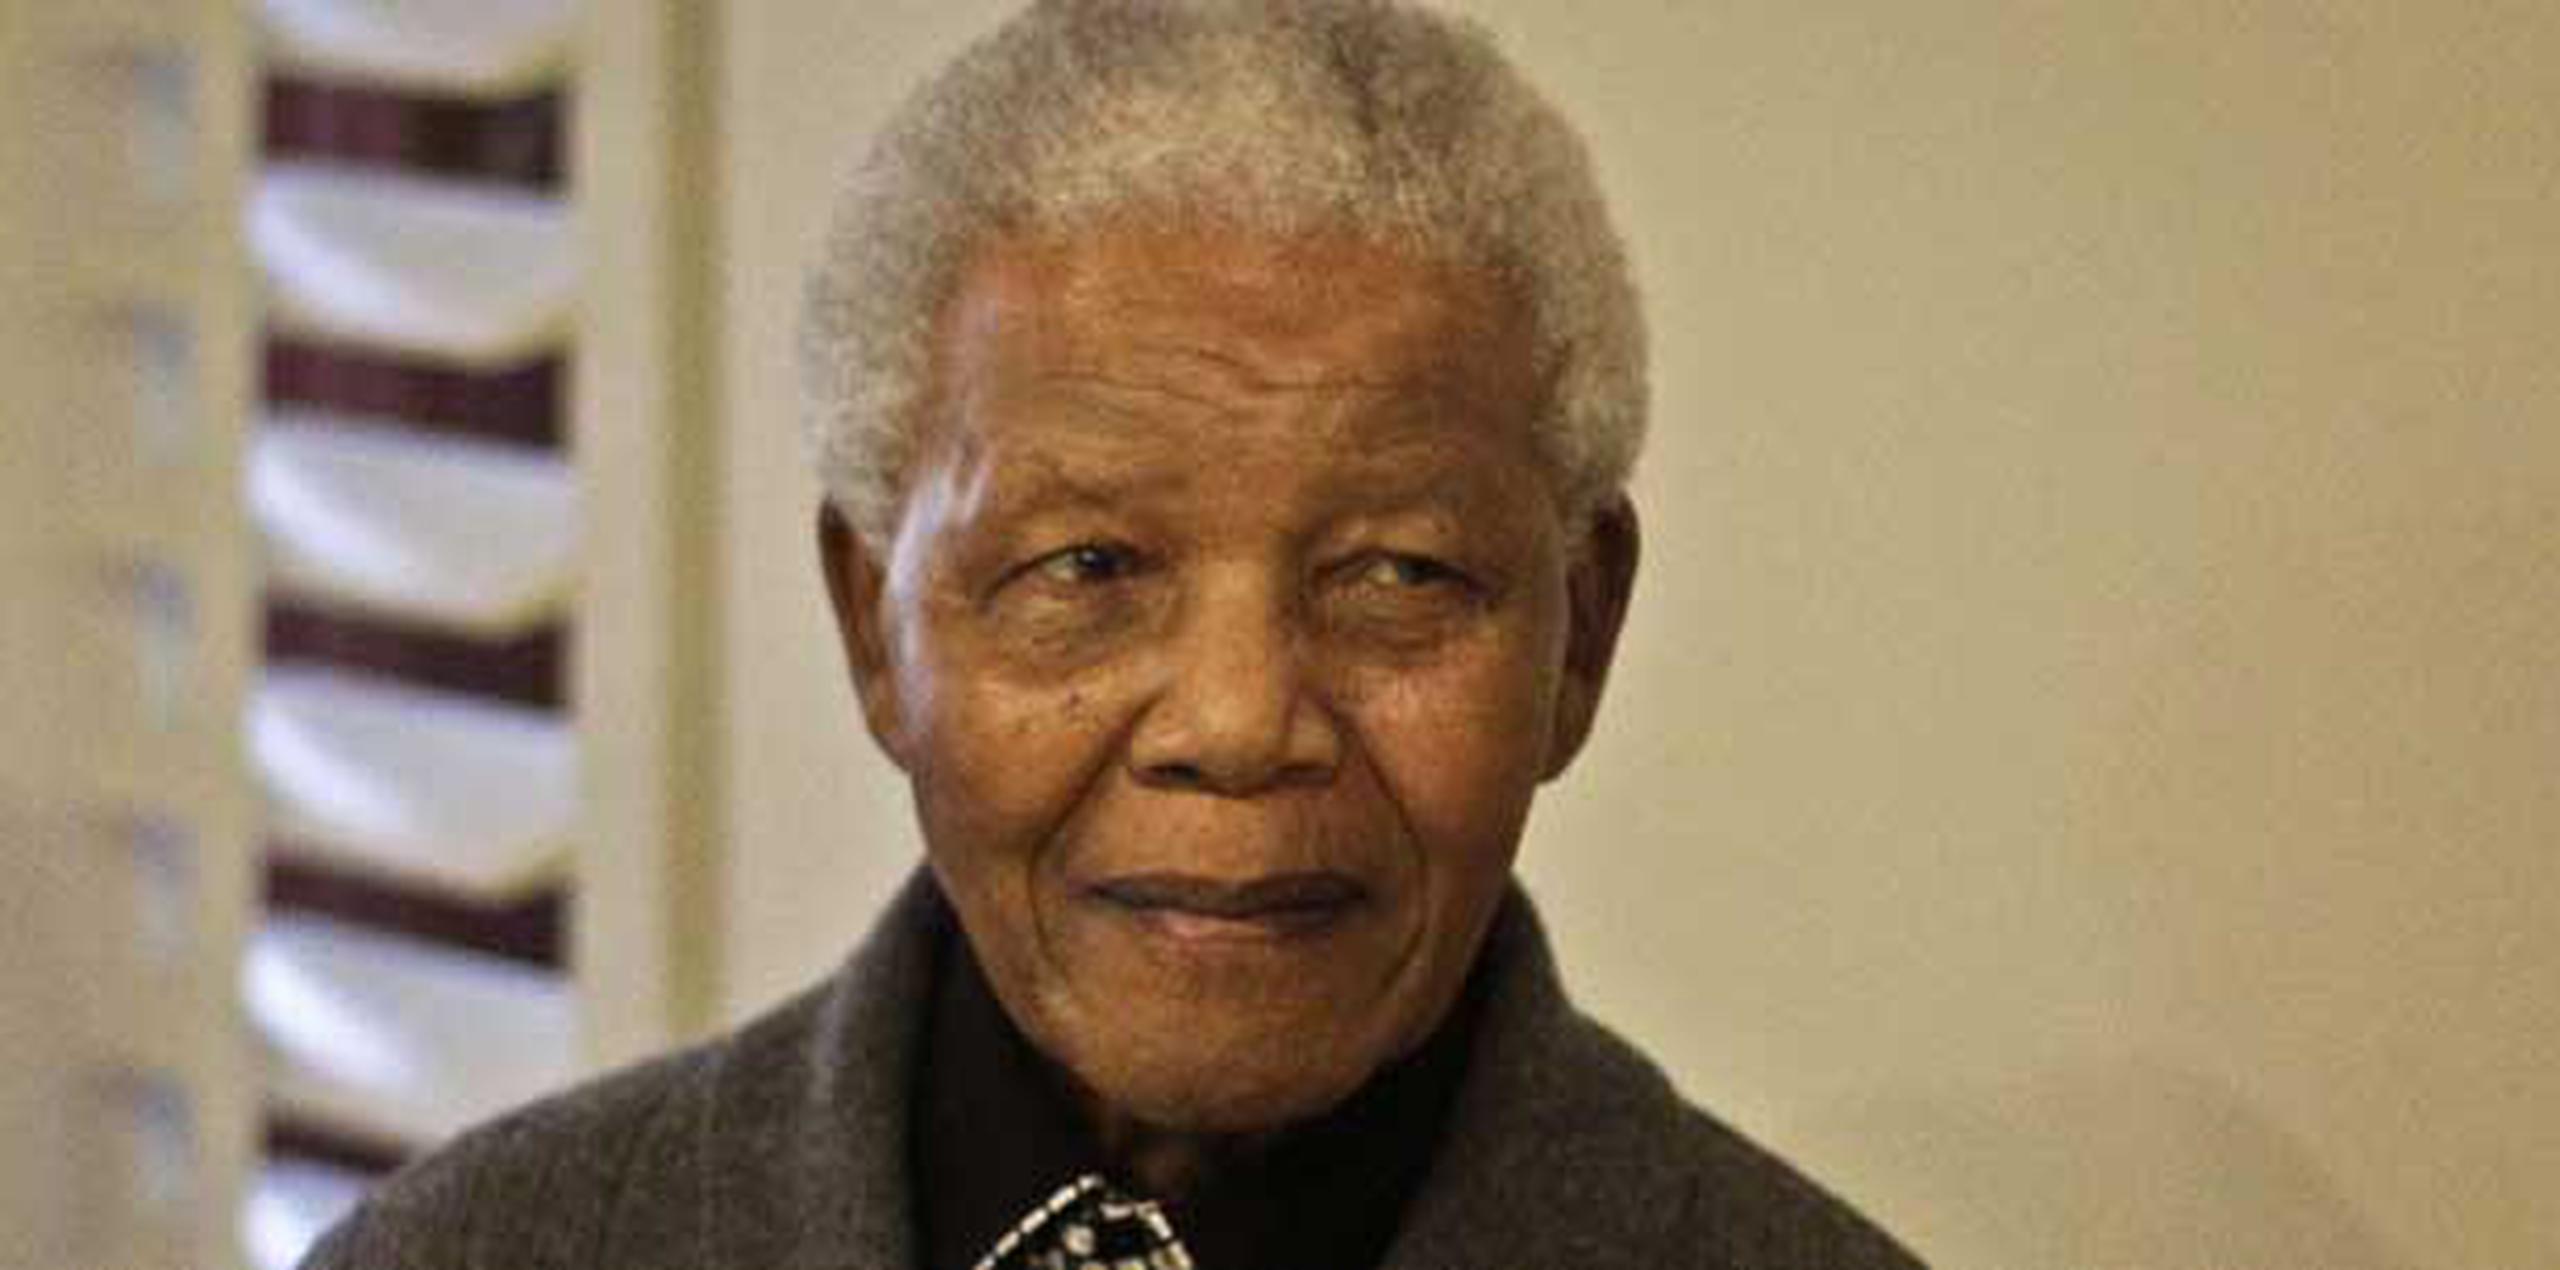 Nelson Mandela fue elegido en 1994 primer presidente negro de Sudáfrica, tras casi siete décadas de lucha contra el sistema segregacionista. (Prensa Asociada)